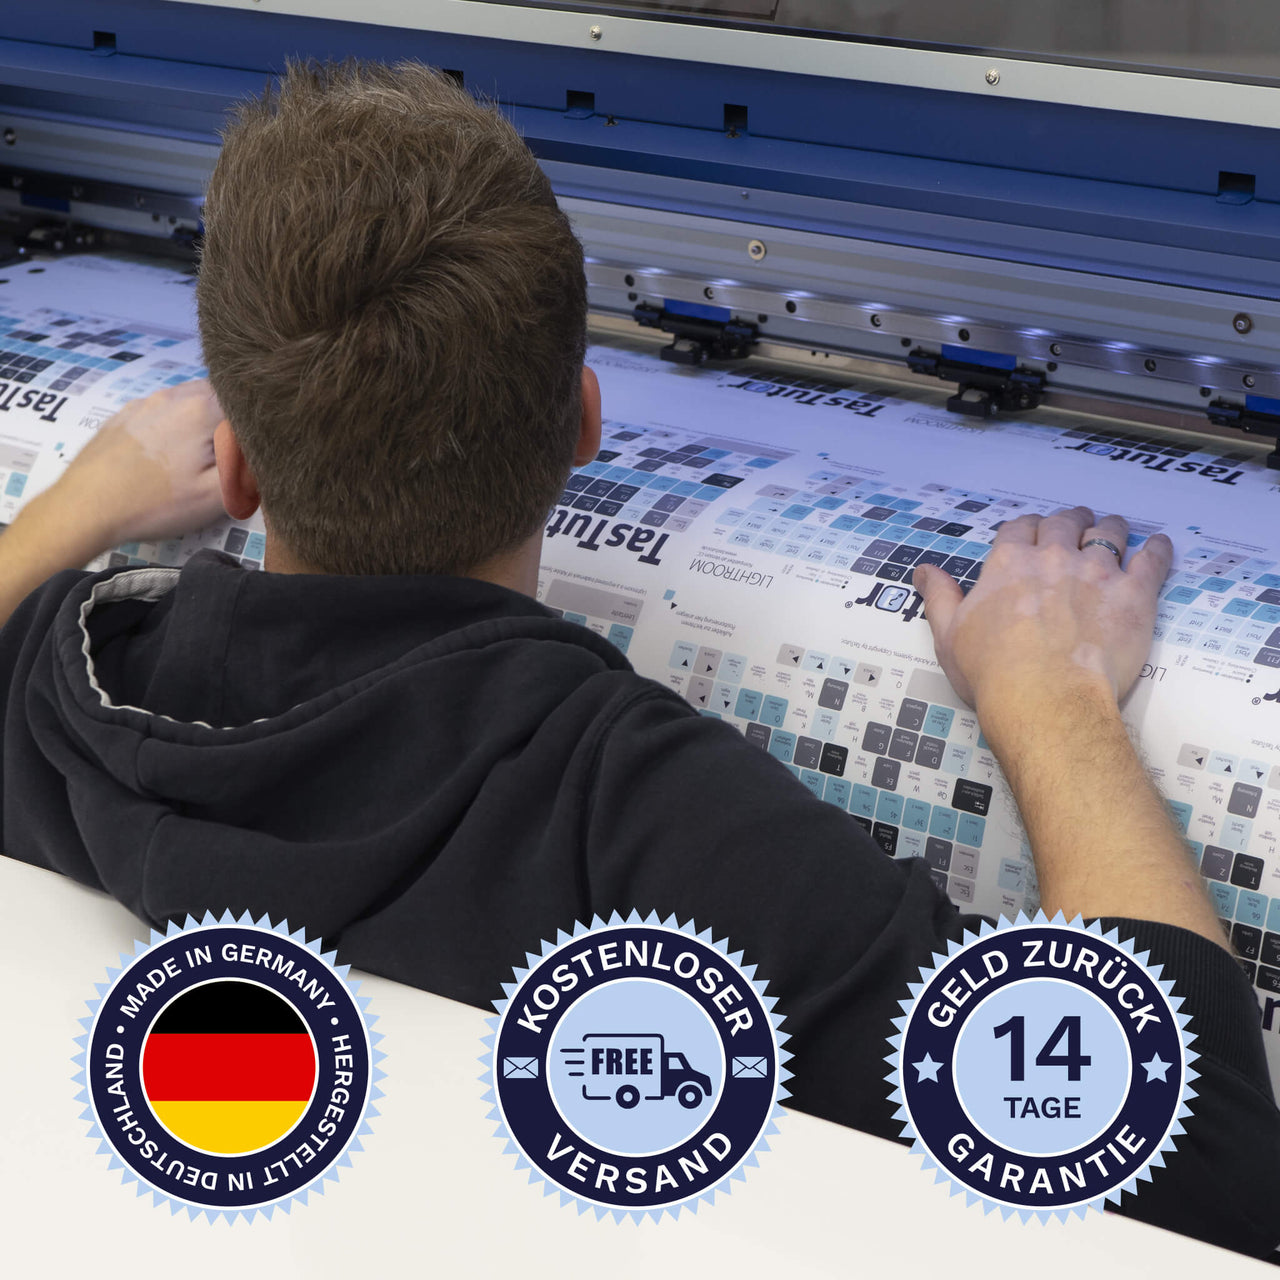 Final Cut Tastaturaufkleber werden in Deutschland hergestellt. Der Versand ist kostenlos und wir gewährleisten 14 Tage Geld zurück Garantie | TasTutor